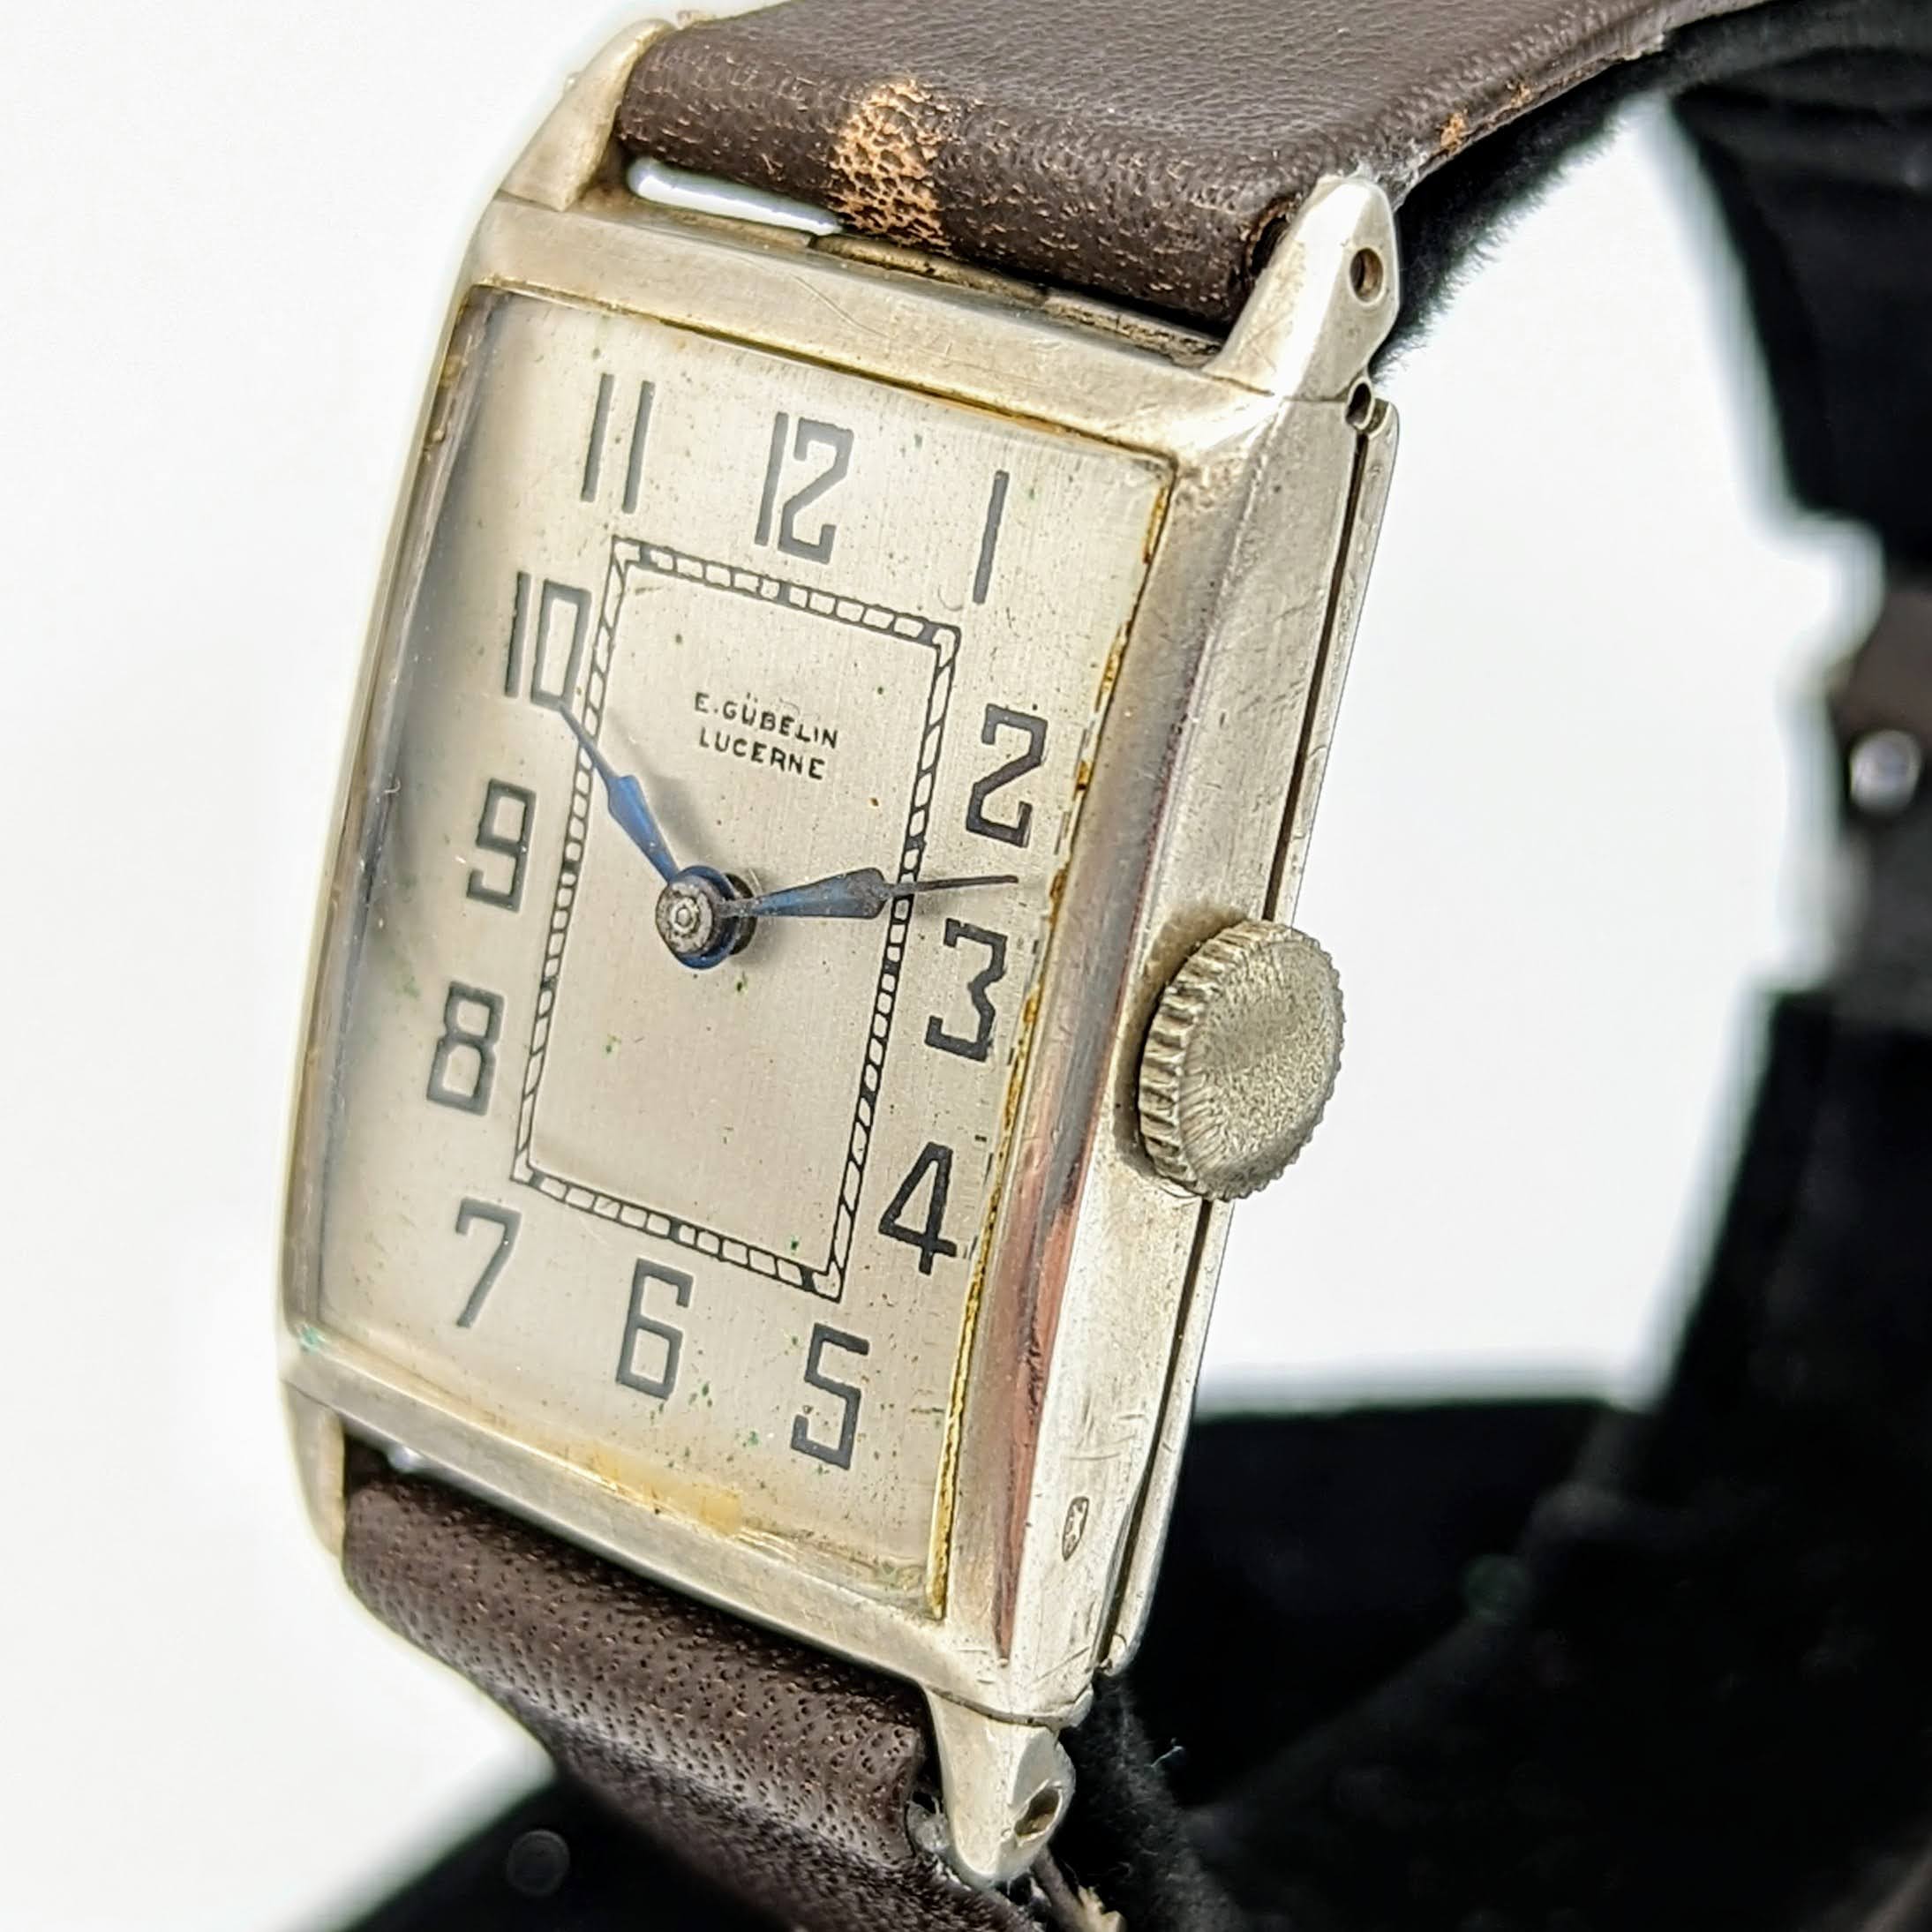 1952's E. GUBELIN LUCERNE Silver Art Deco Watch Swiss Made Wristwatch